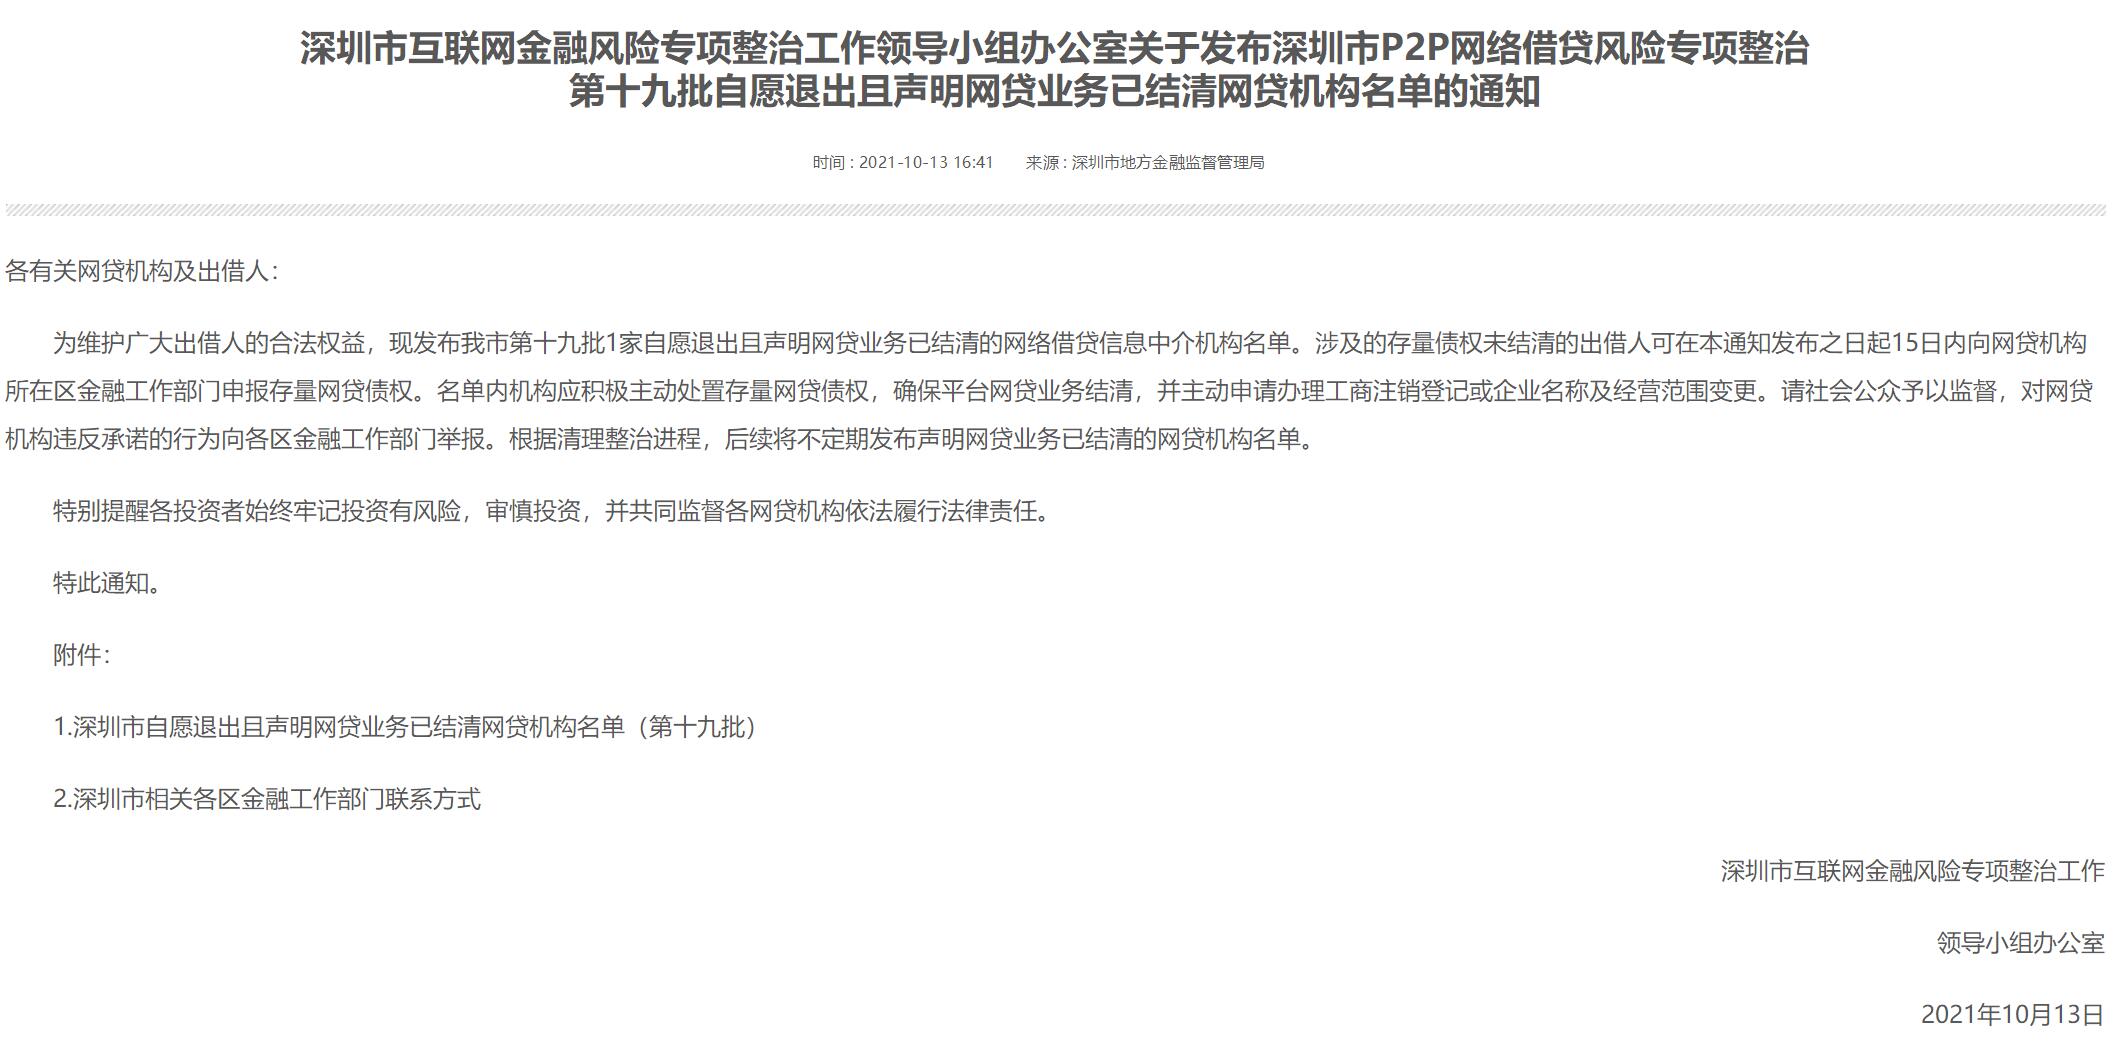 深圳新增1家P2P退出且声明结清 当前已累计221家平台